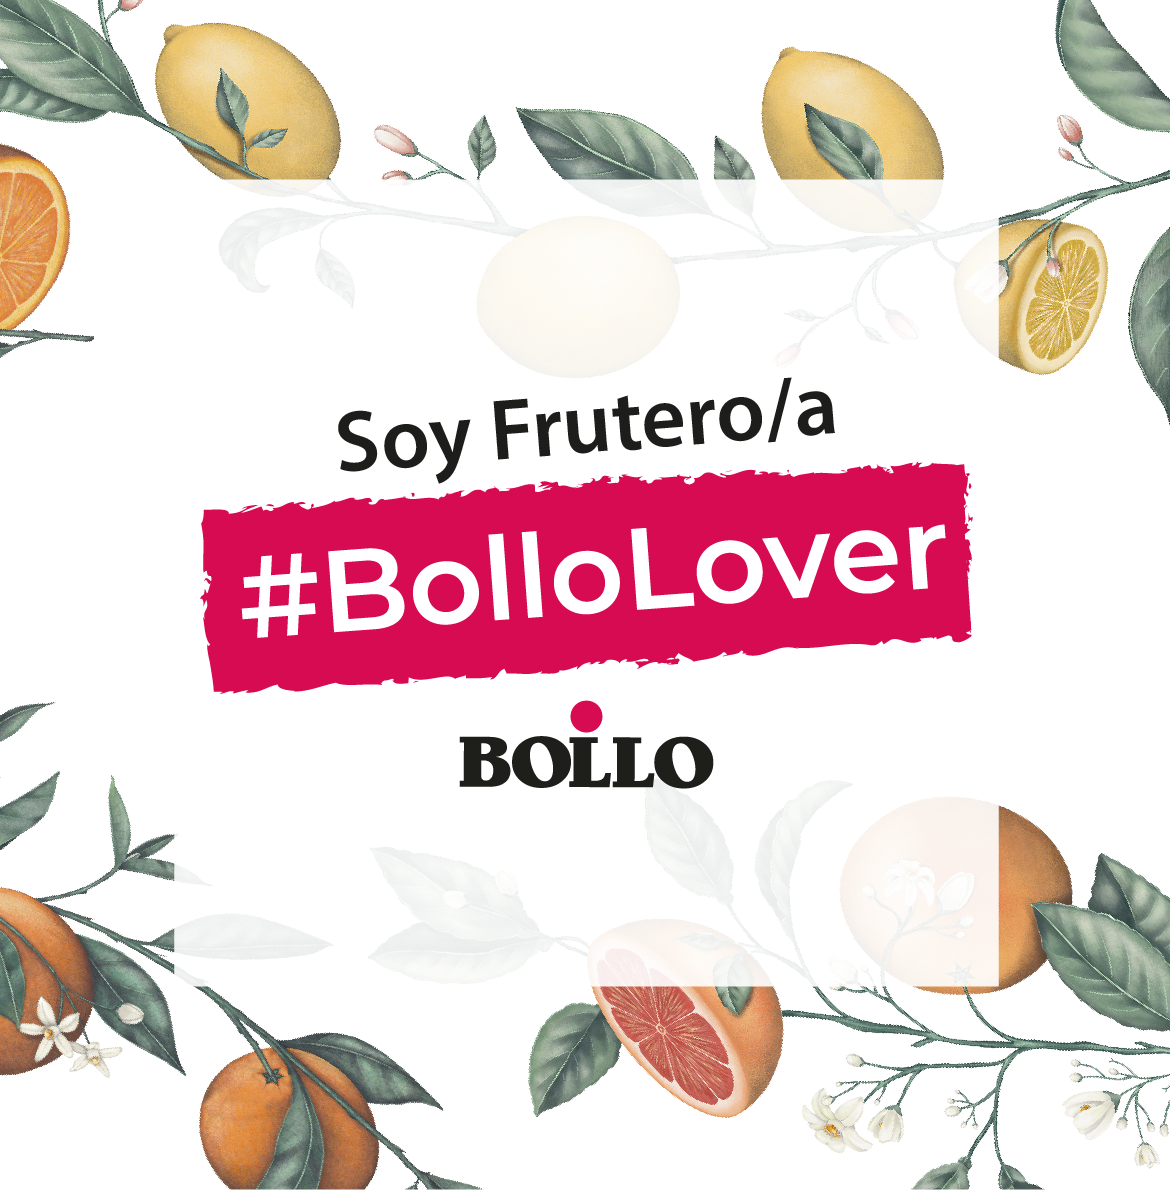 Fruterx “BolloLover”